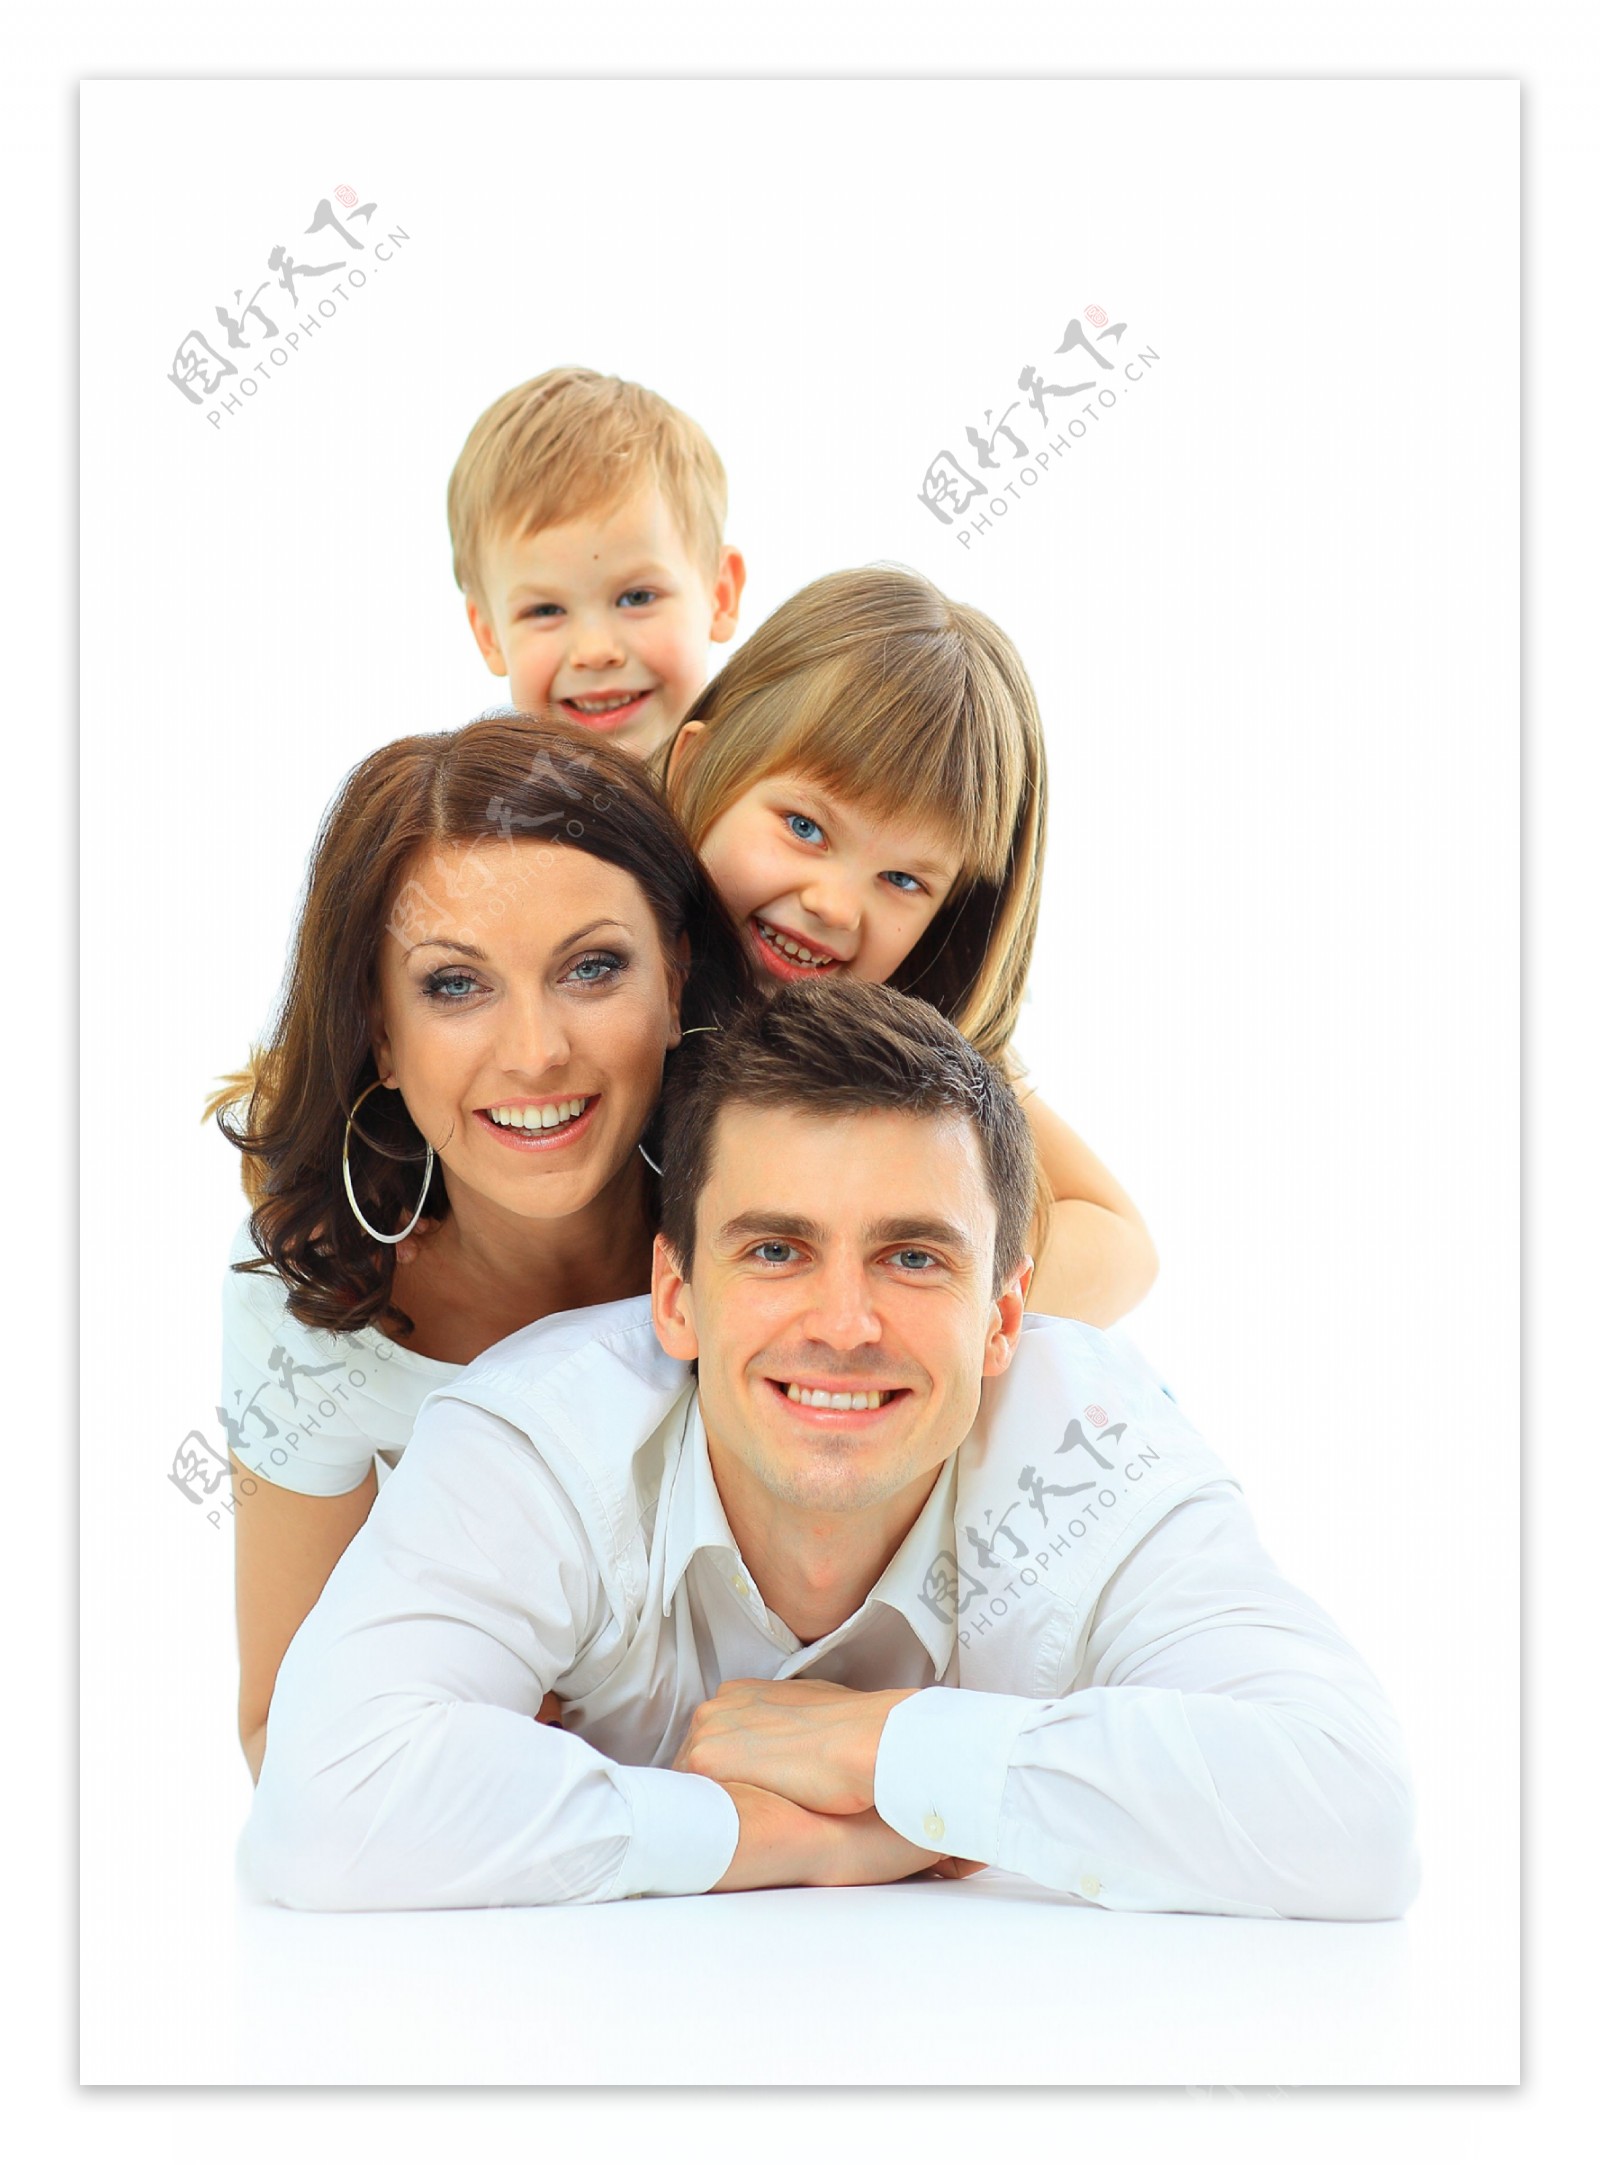 玩耍的家庭人物摄影图片